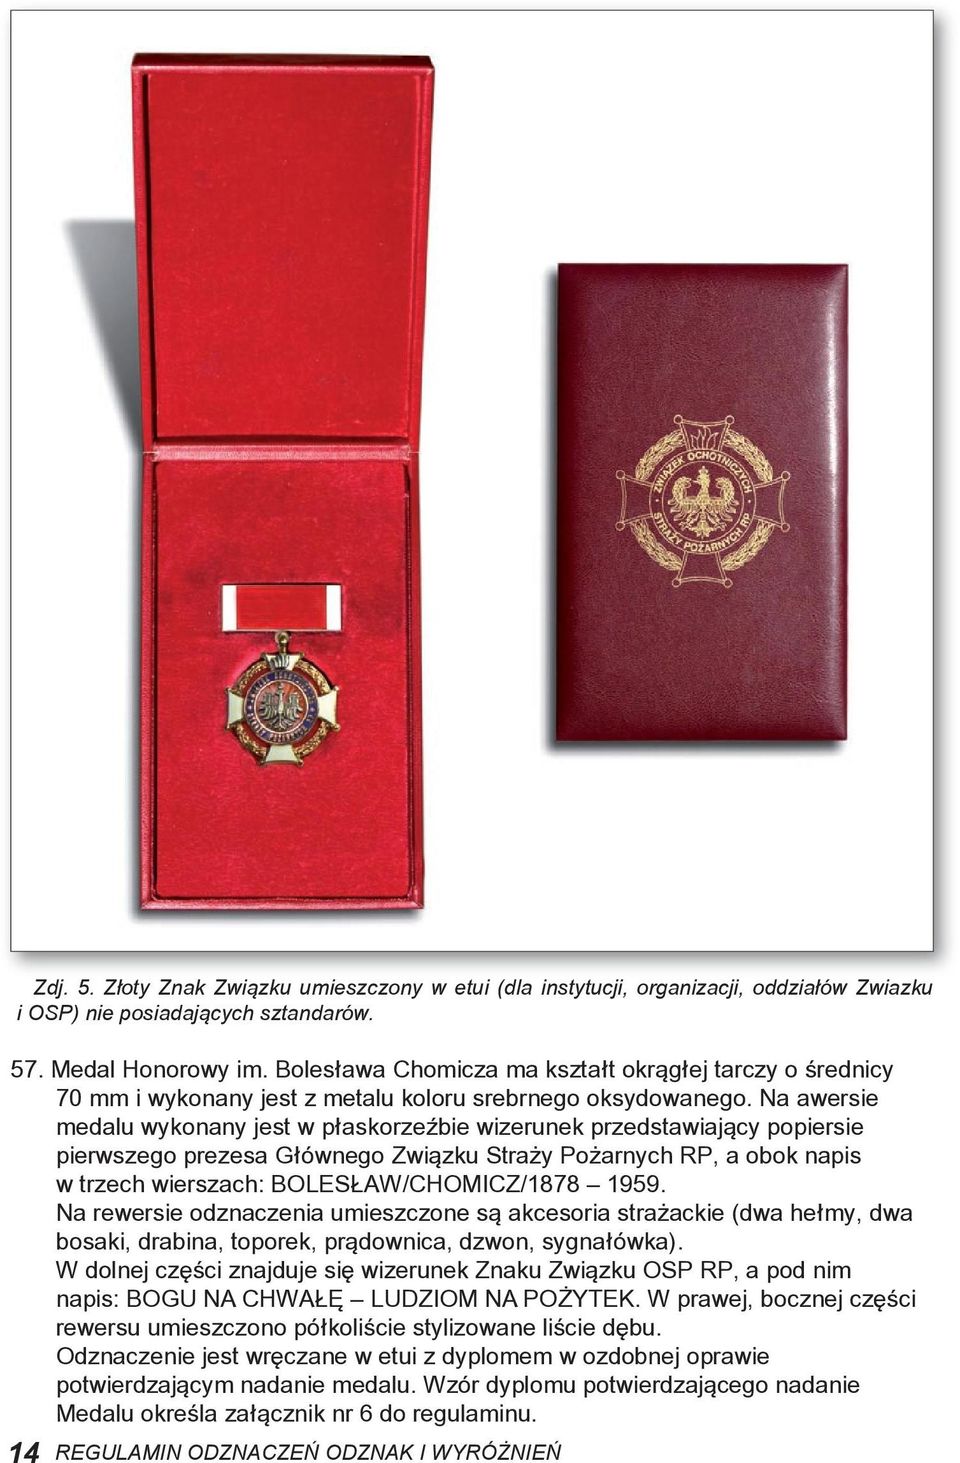 Na awersie medalu wykonany jest w płaskorzeźbie wizerunek przedstawiający popiersie pierwszego prezesa Głównego Związku Straży Pożarnych RP, a obok napis w trzech wierszach: BOLESŁAW/CHOMICZ/1878